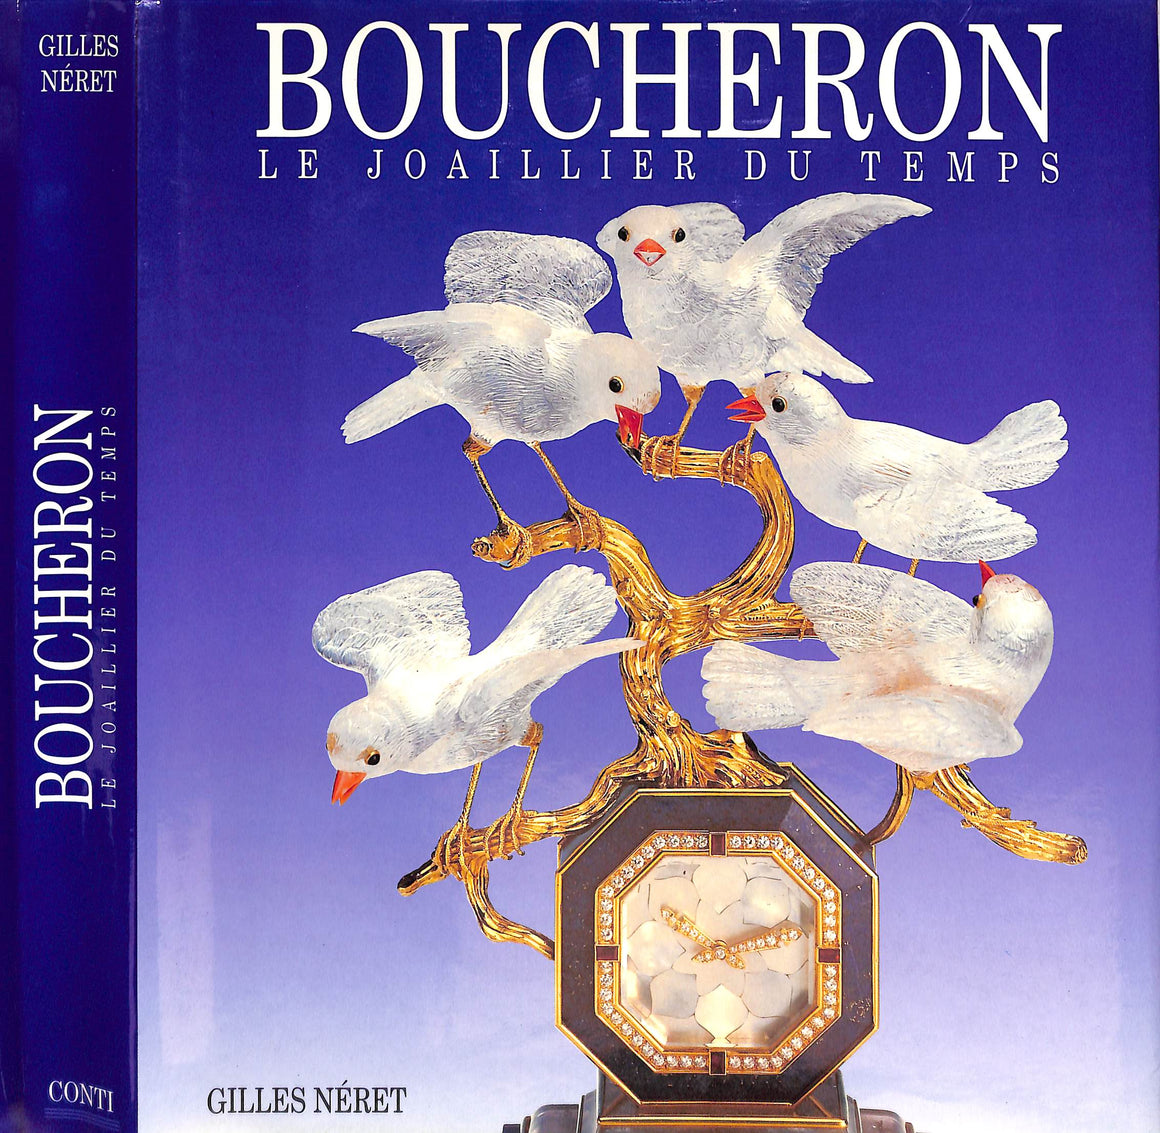 "Boucheron Le Joaillier Du Temps" 1992 NERET, Gilles